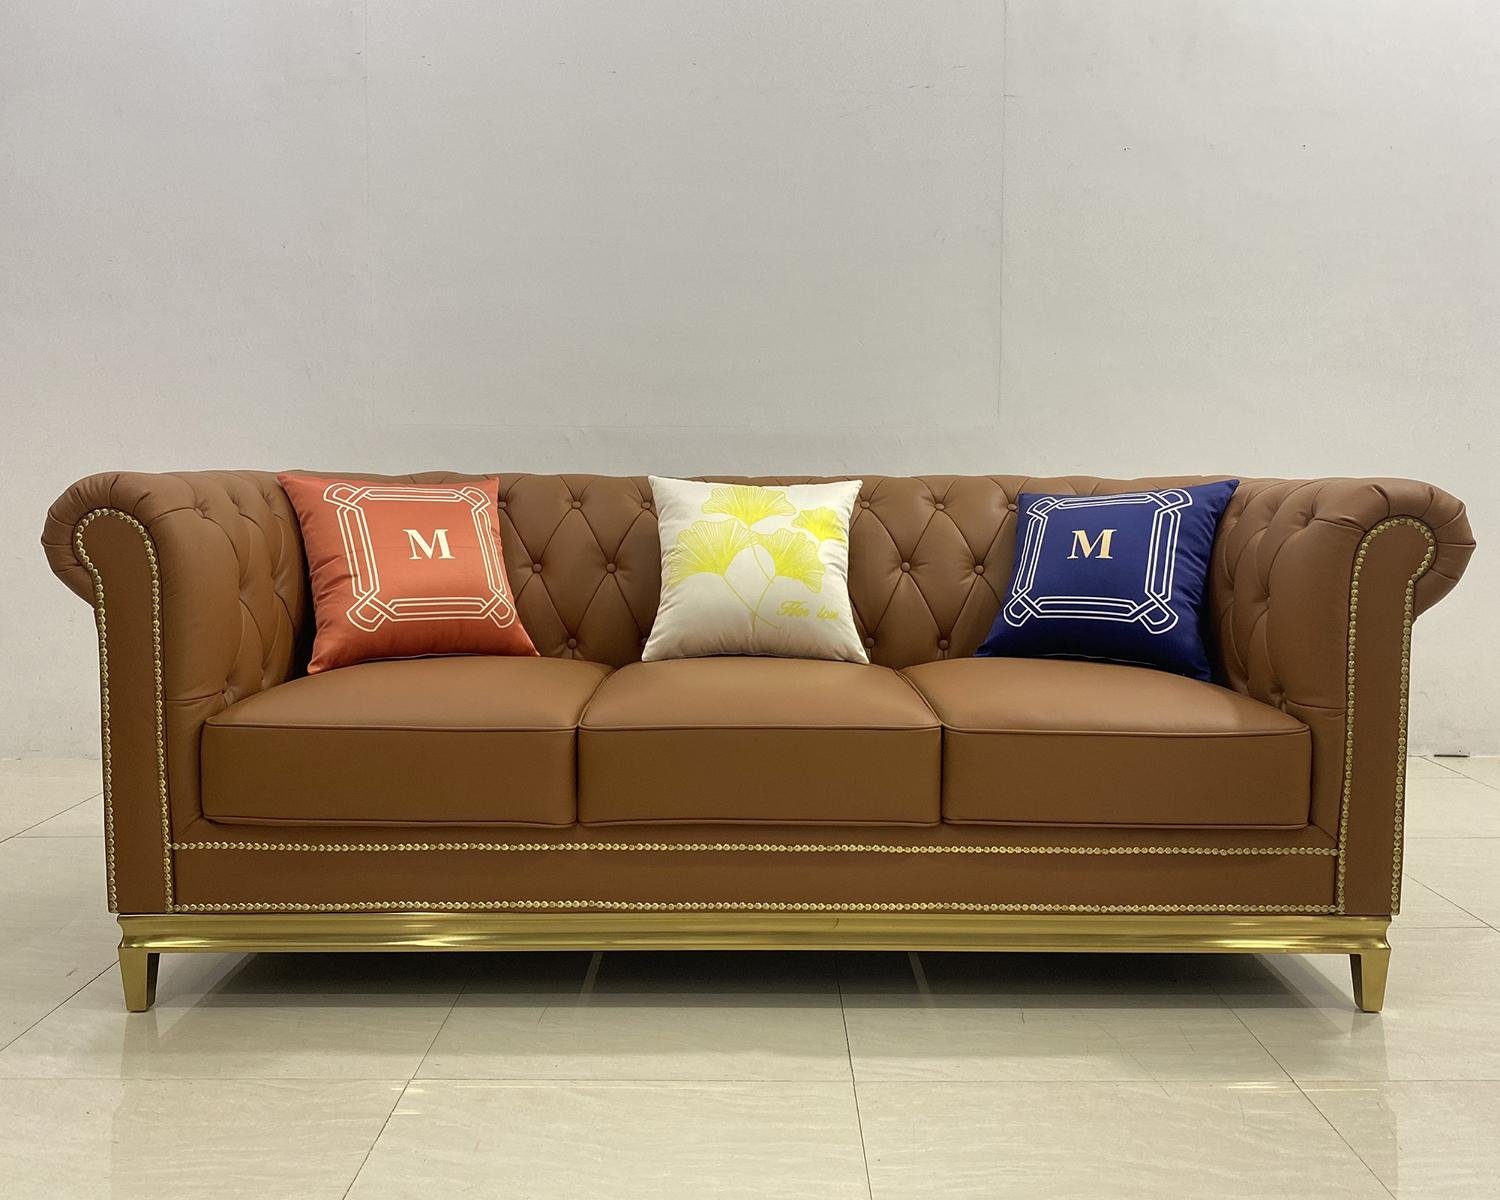 JVmoebel Sofa Blaue Chesterfield Sofa Couch Möbel Dreisitzer Couch, Made in Europe Braun